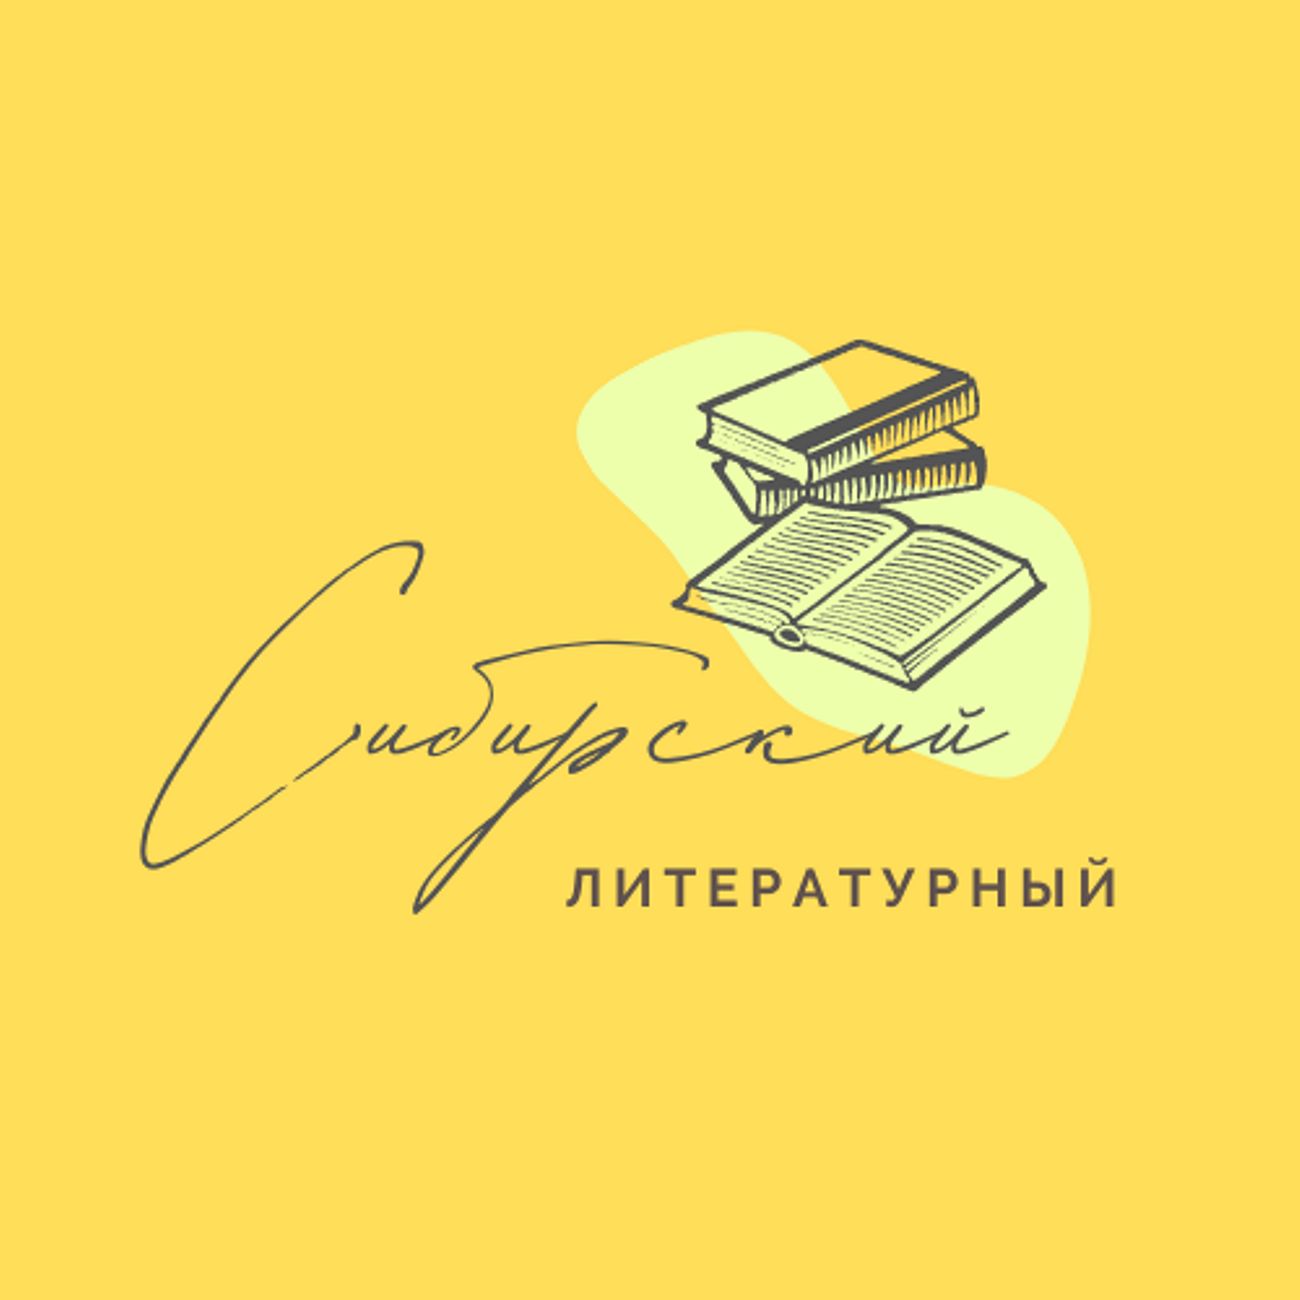 Сибирский литературный